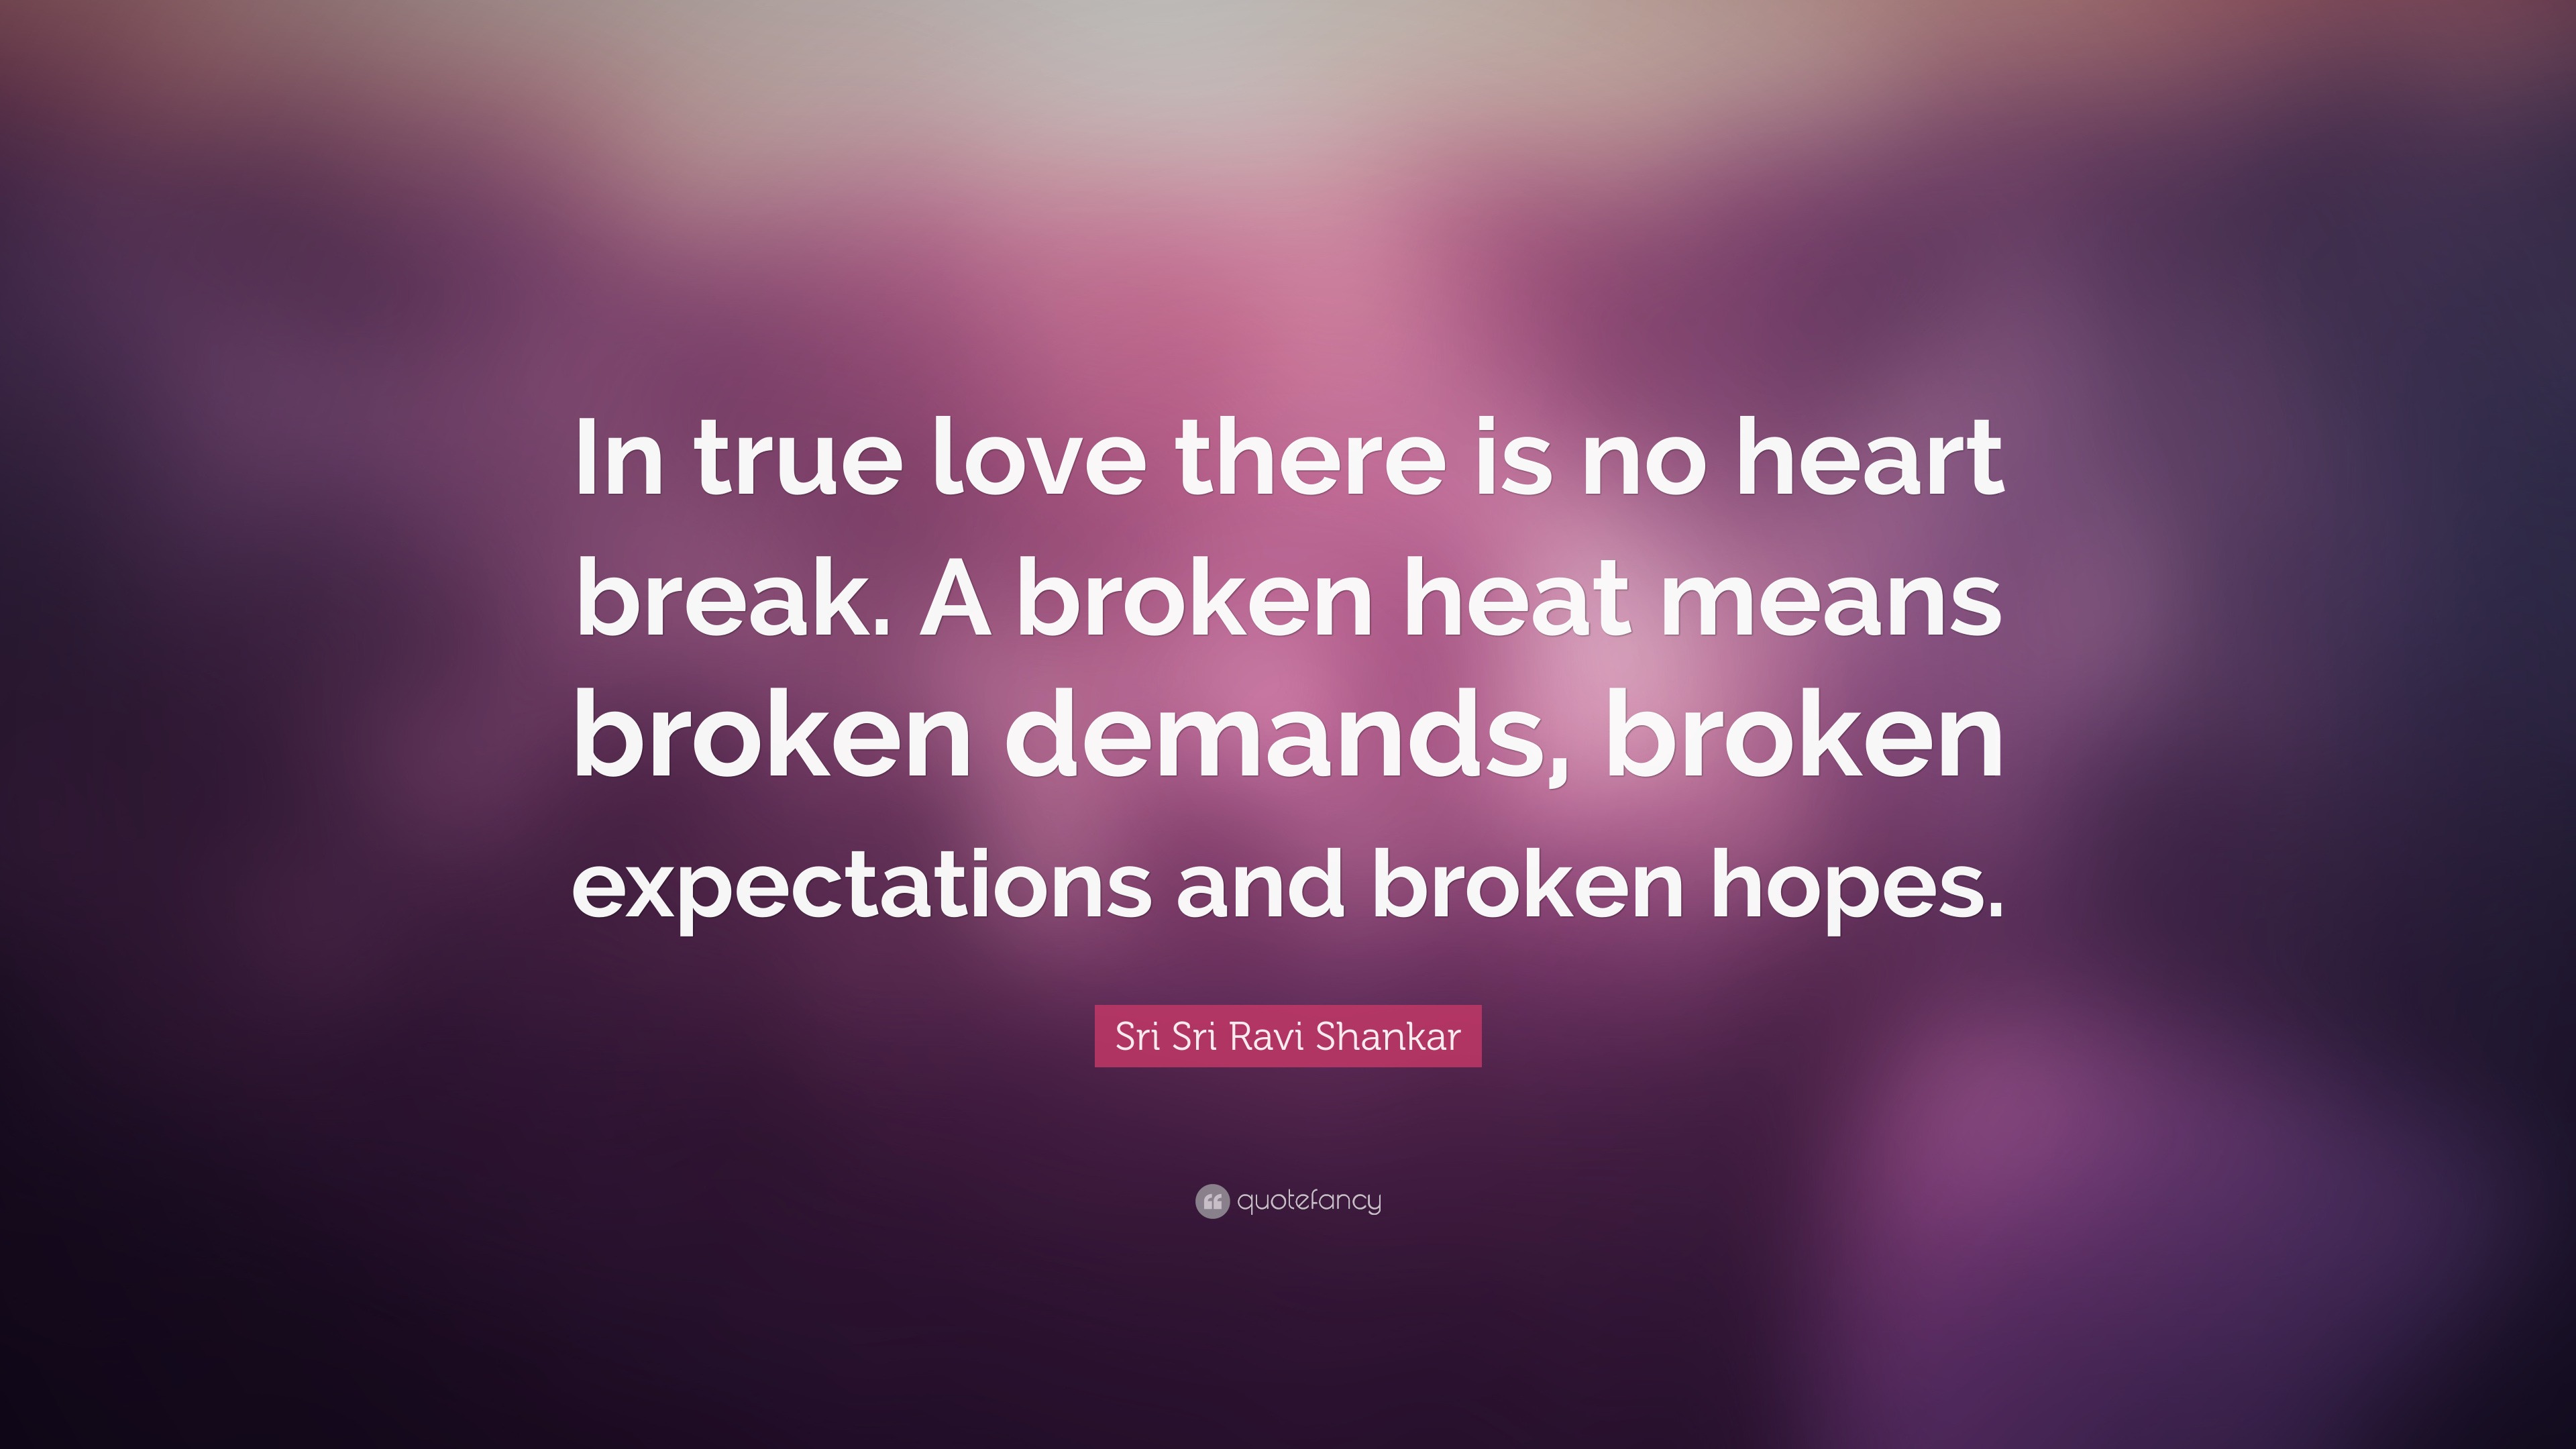 Sri Sri Ravi Shankar Quote: “In true love there is no heart break. A ...